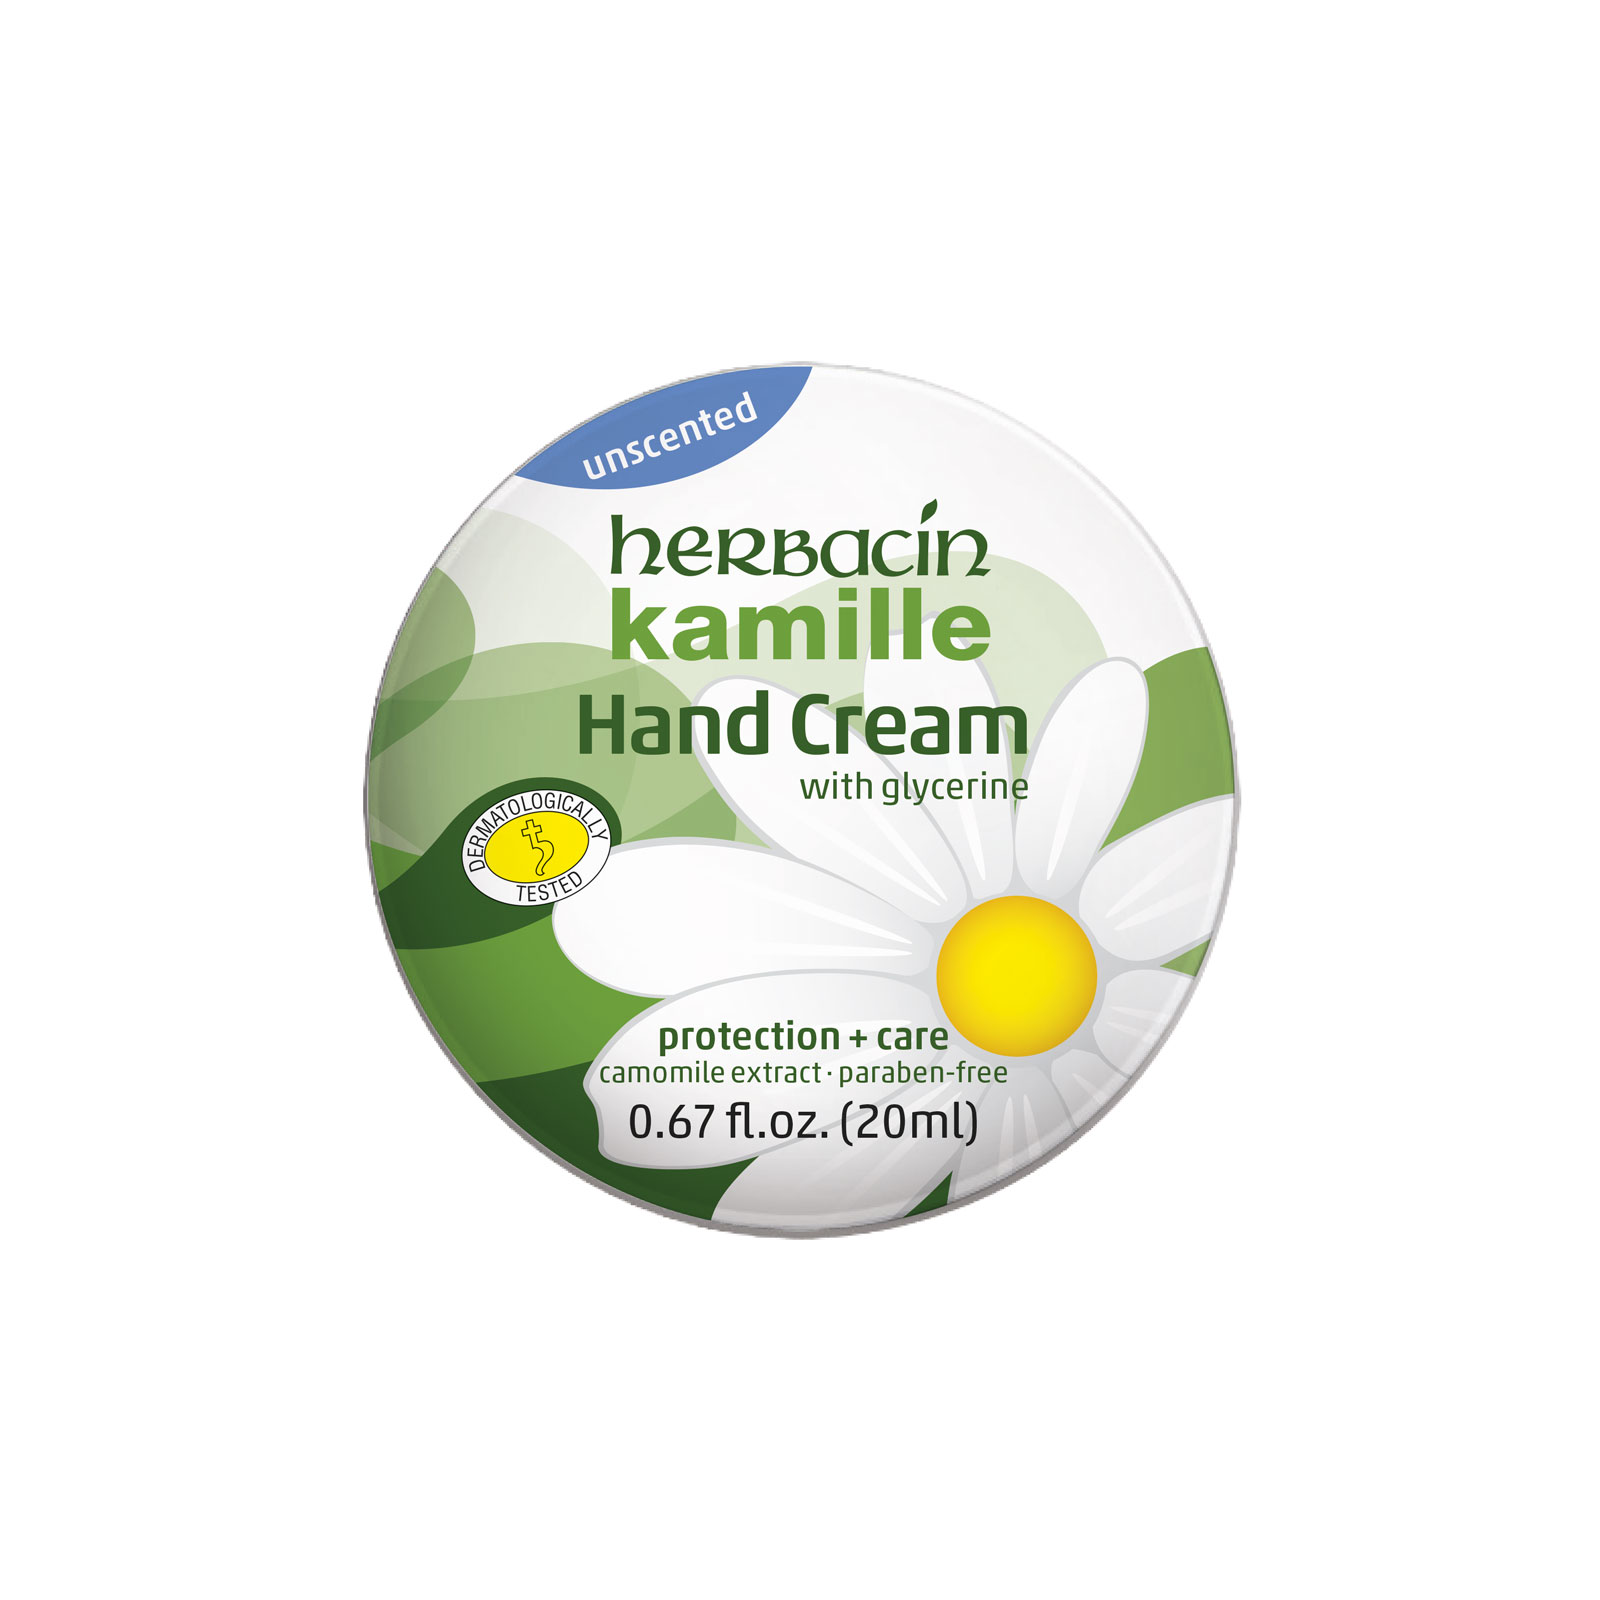 Herbacin kamille Hand Cream - unscented - tin .67 fl. oz.